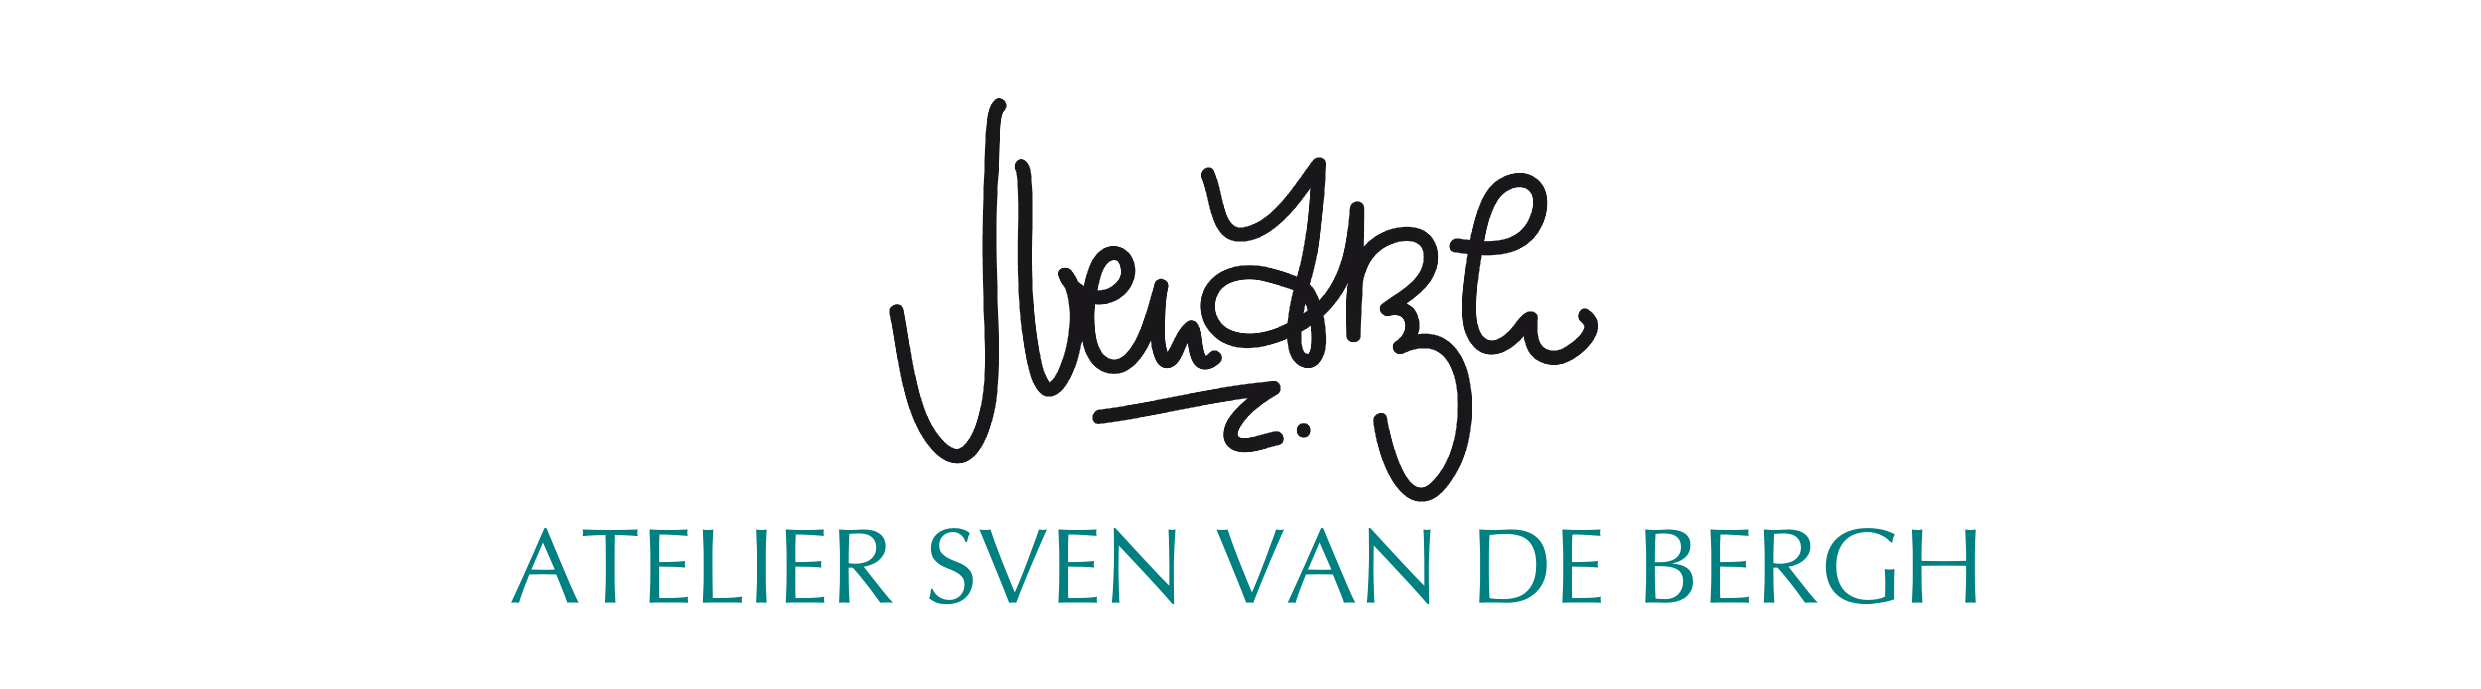 Logo atelier Sven van de Bergh.